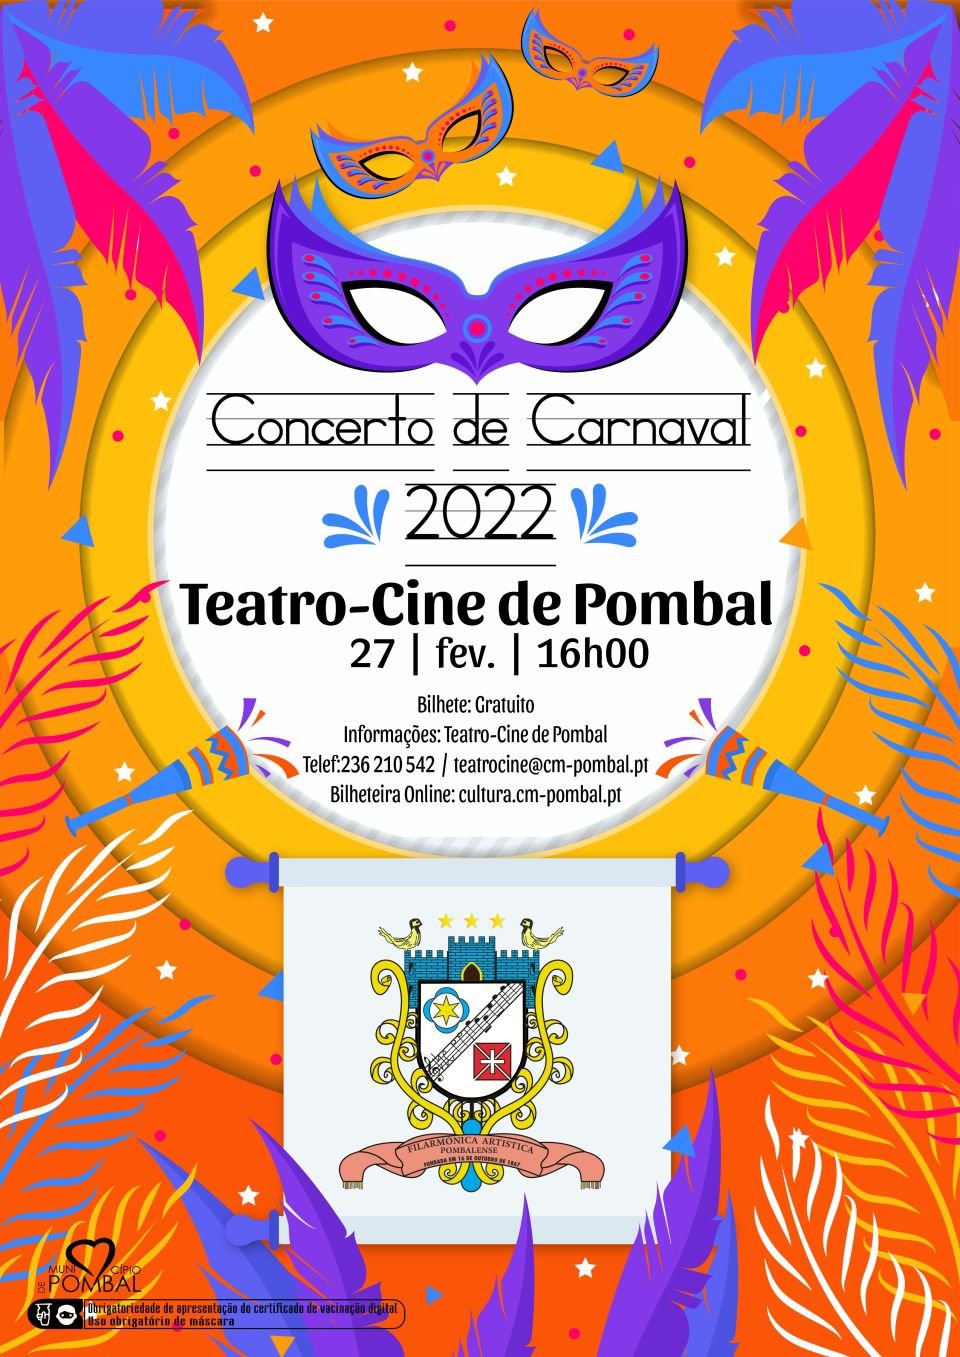 Concerto de Carnaval - Filarmónica Artística Pombalense